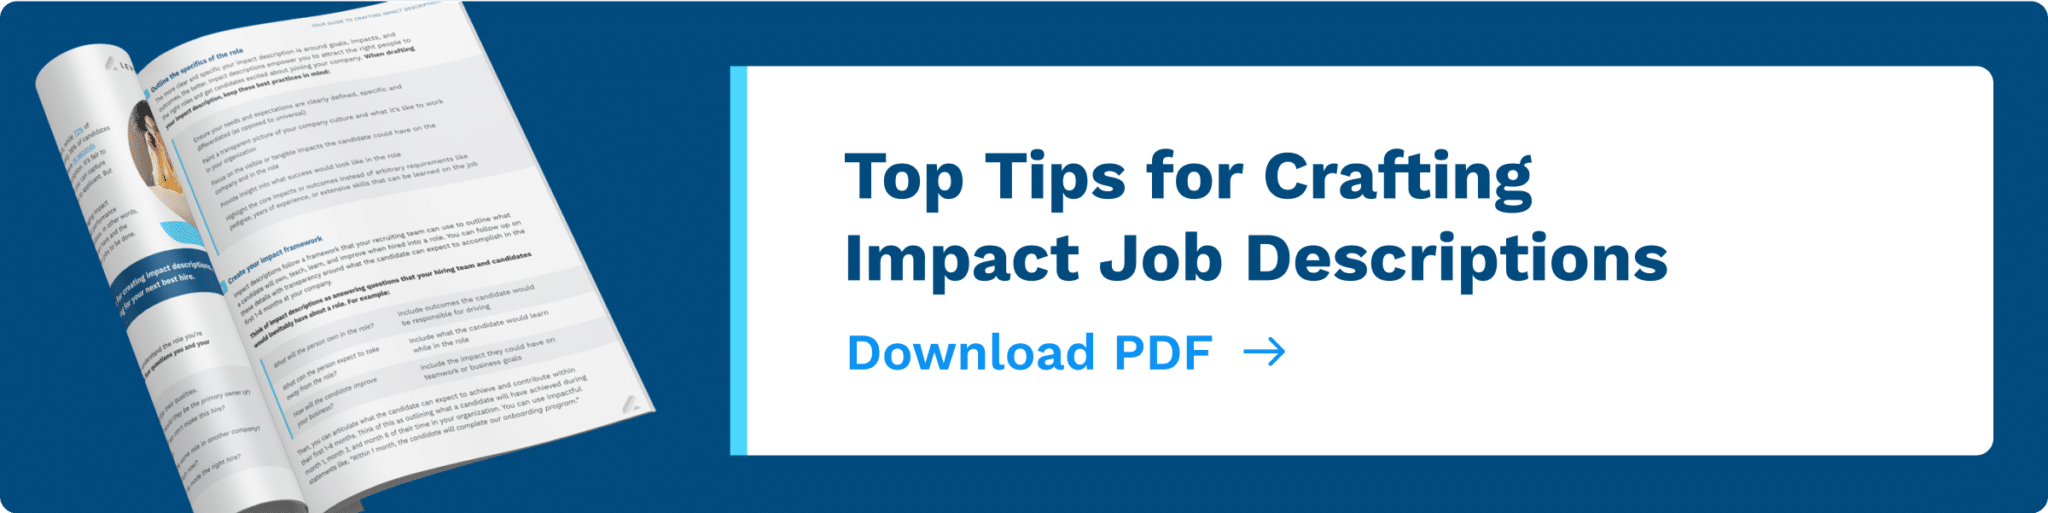 Top Tips for Crafting Impact Job Descriptions PDF